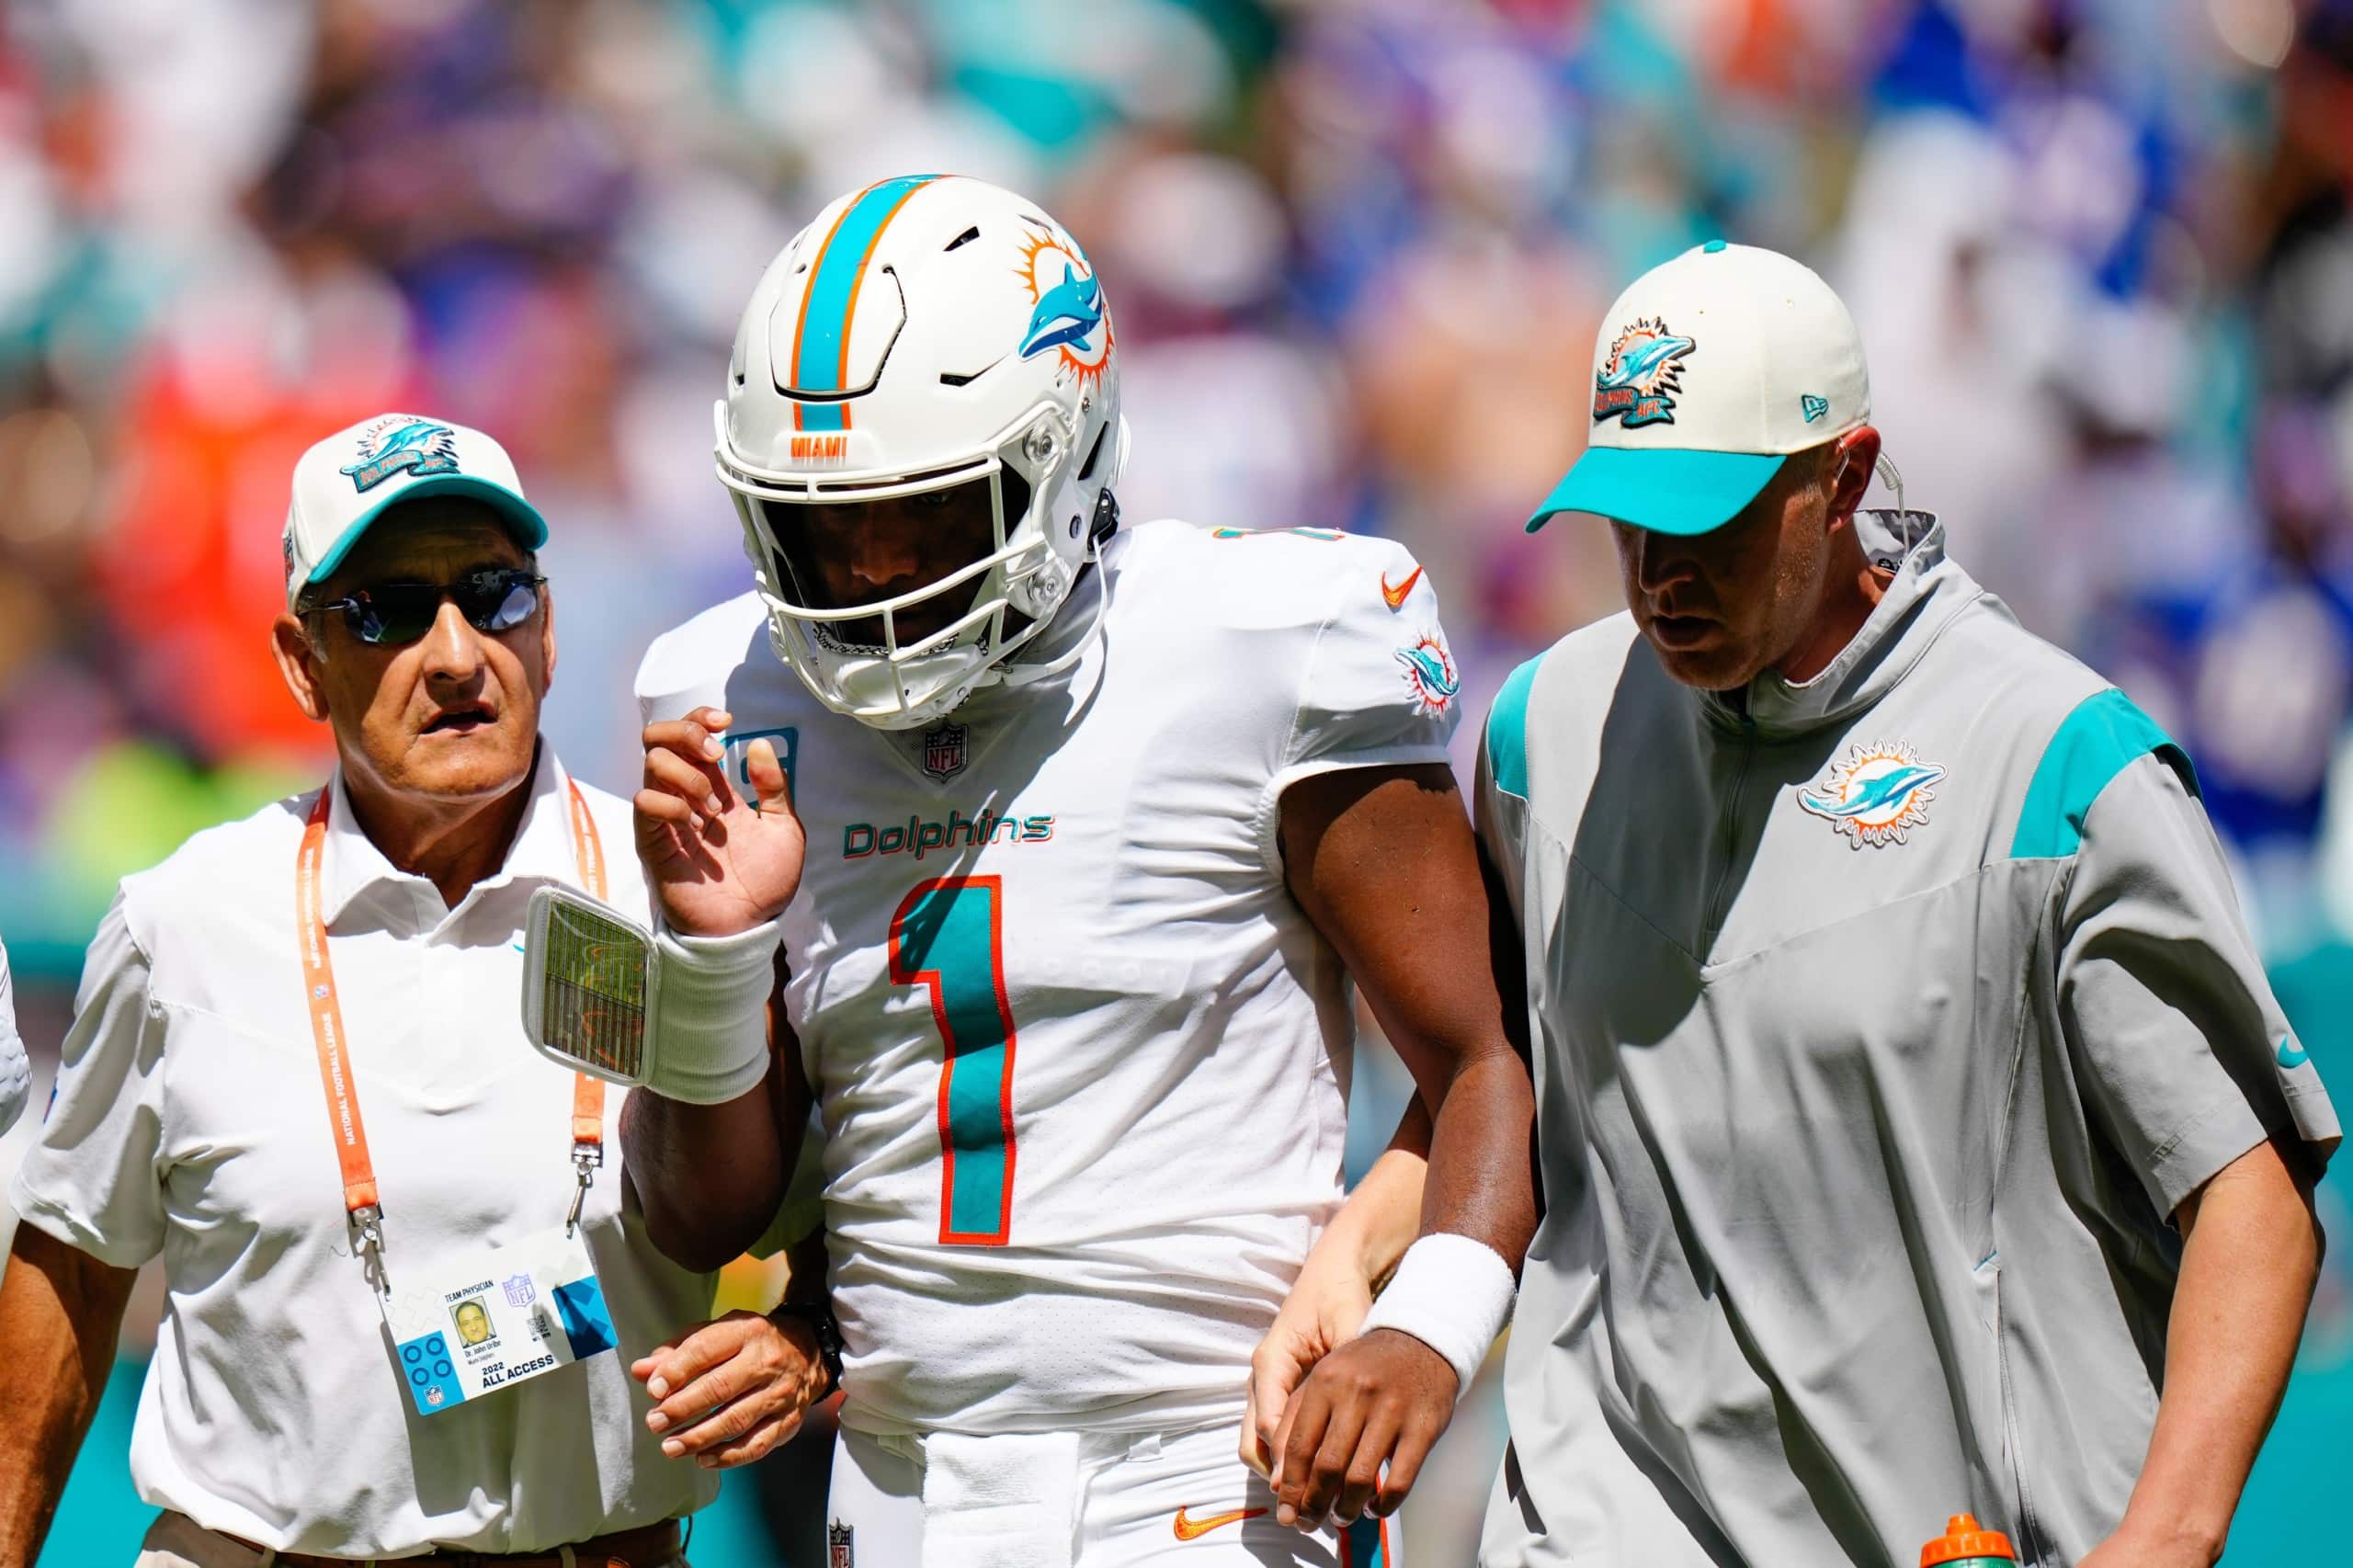 Tua Tagovailoa, Miami Dolphins quarterback, suffered concussion on